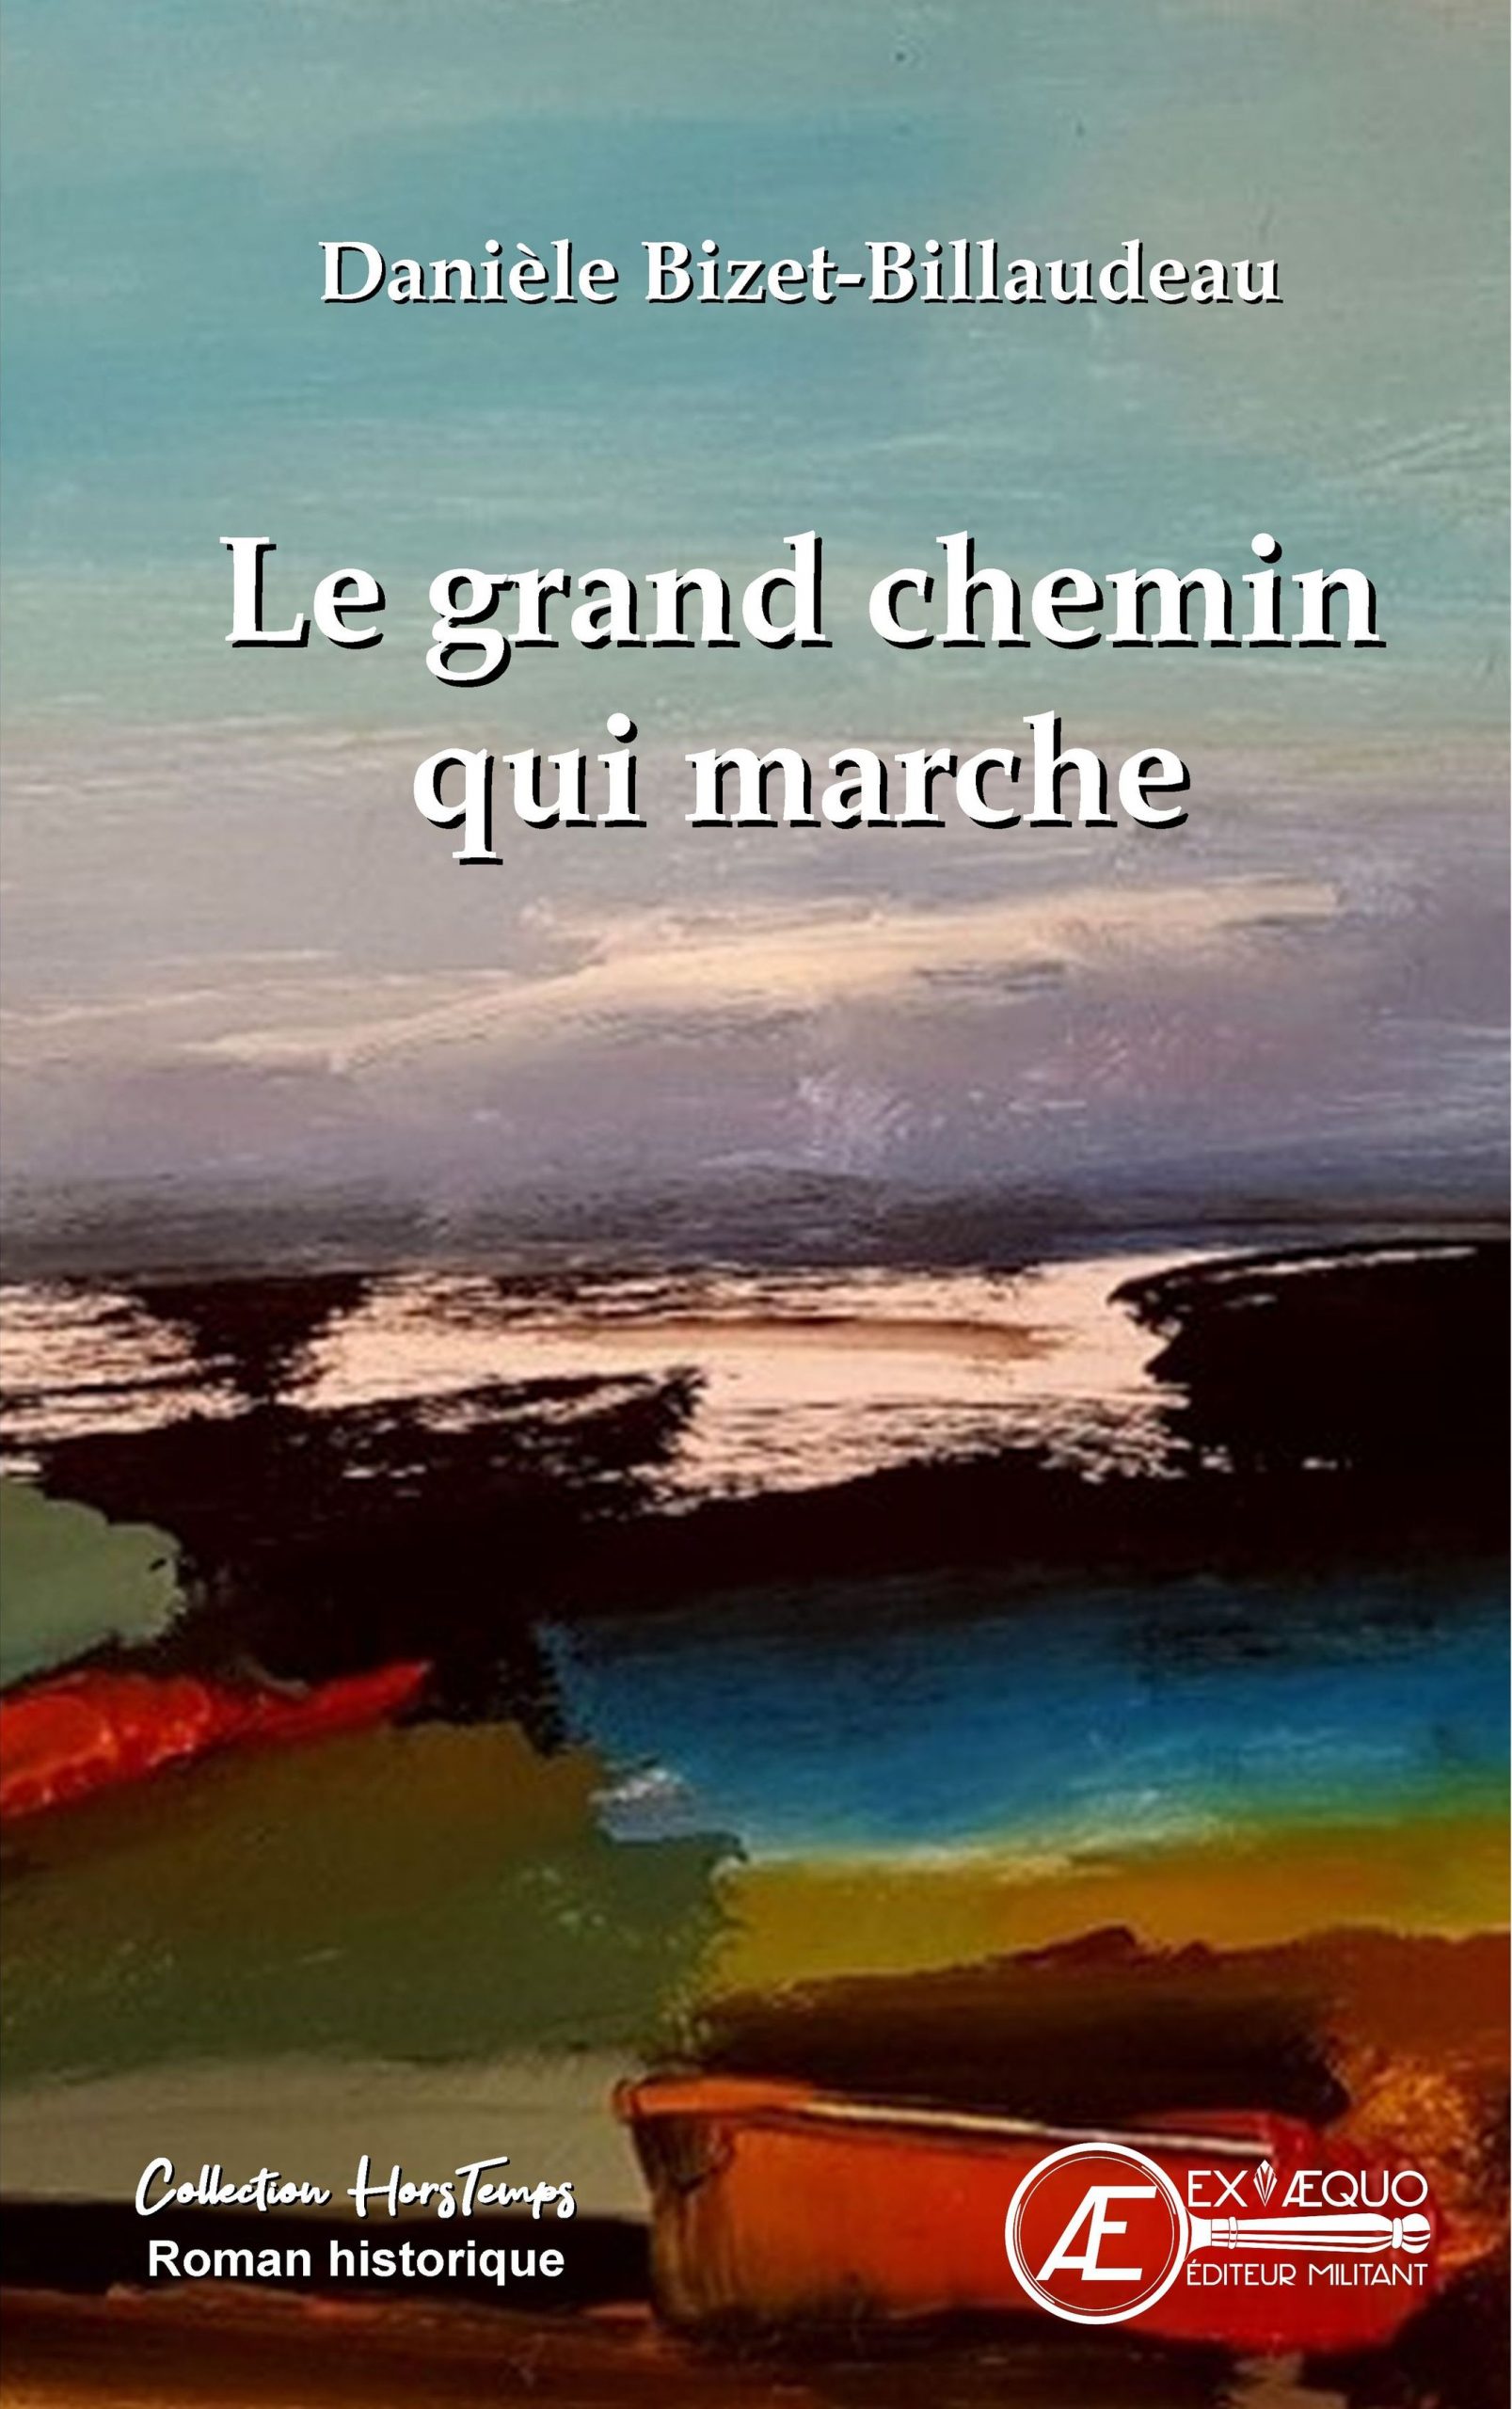 You are currently viewing Le grand chemin qui marche, de Danièle Billaudeau